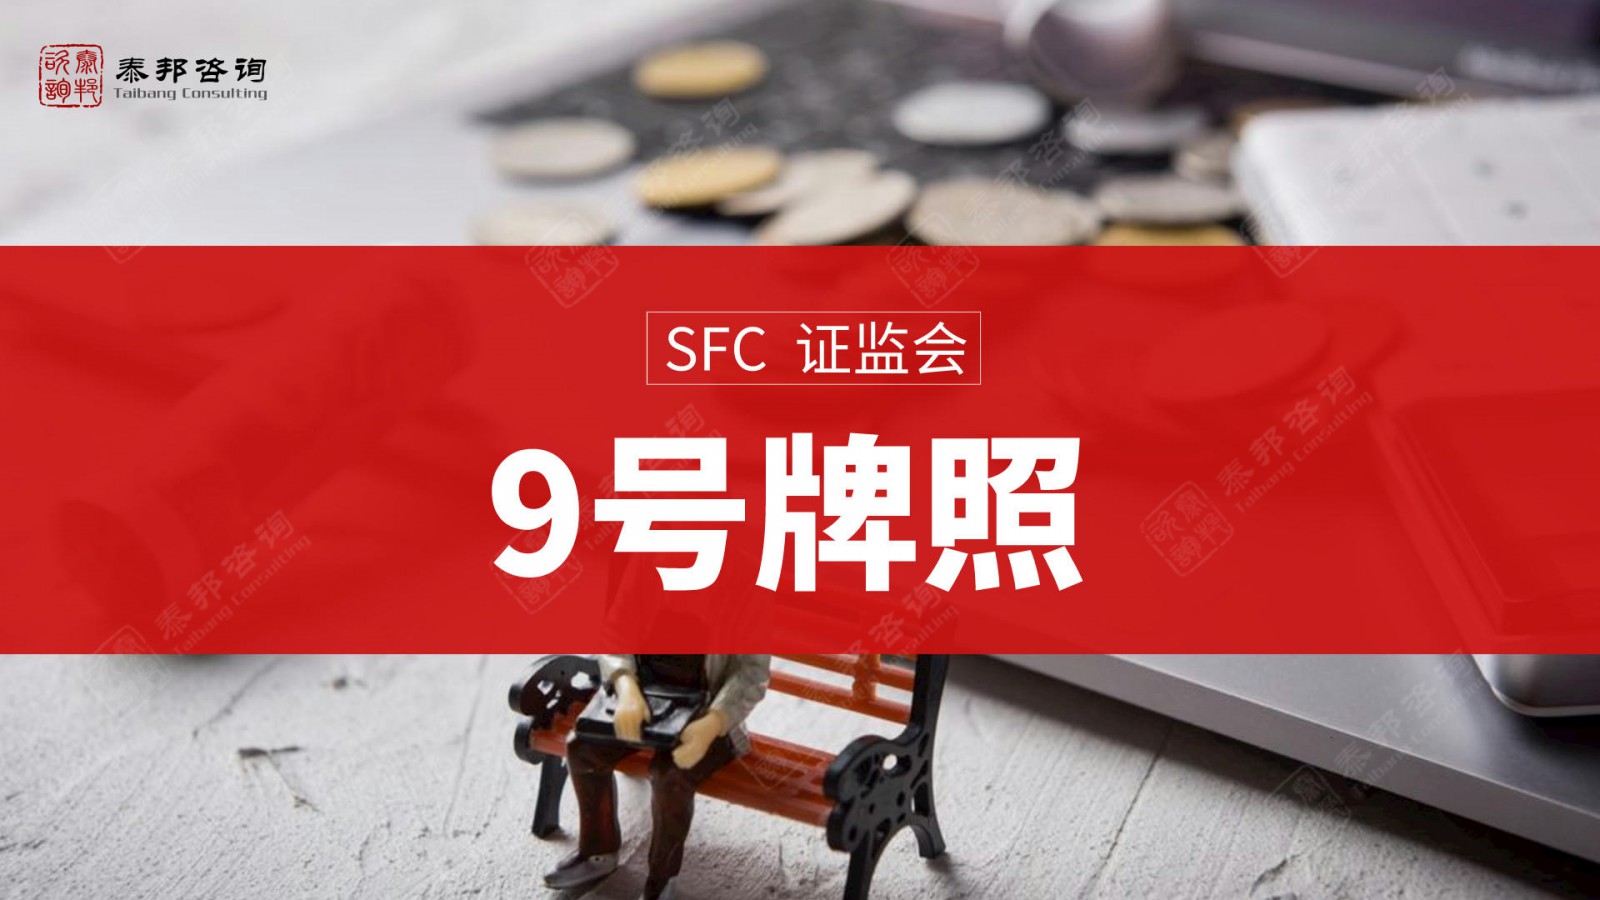 申请代办香港149号金融牌照这文章得阅读好几遍